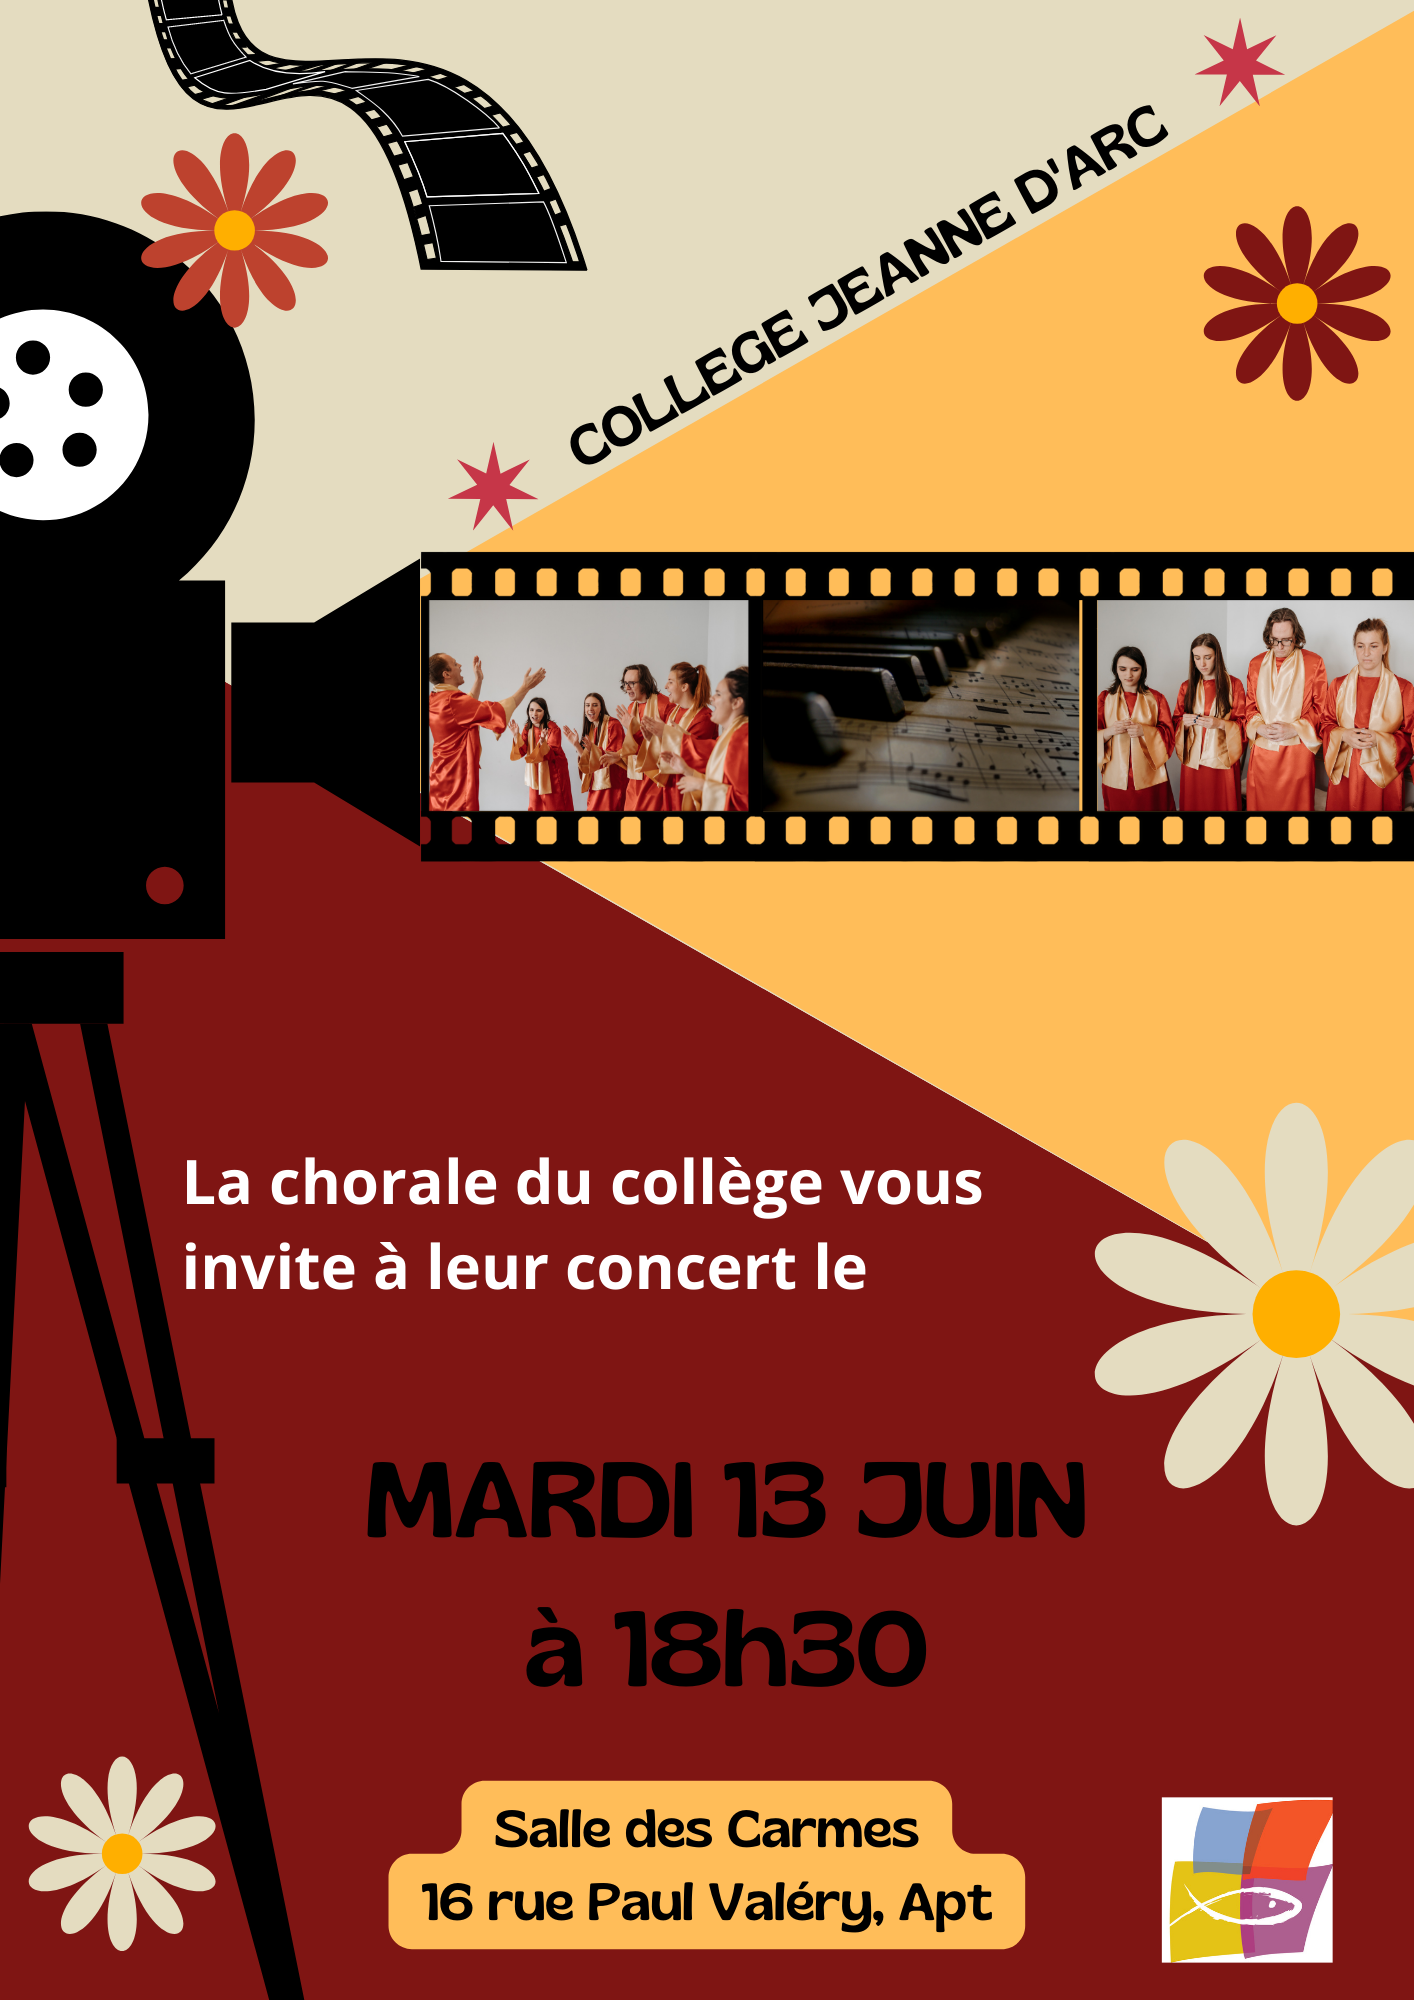 Le mardi 13 juin à 18h30 à la Salle des Carme, le collège Jeanne d'Arc vous invite au concert de la chorale